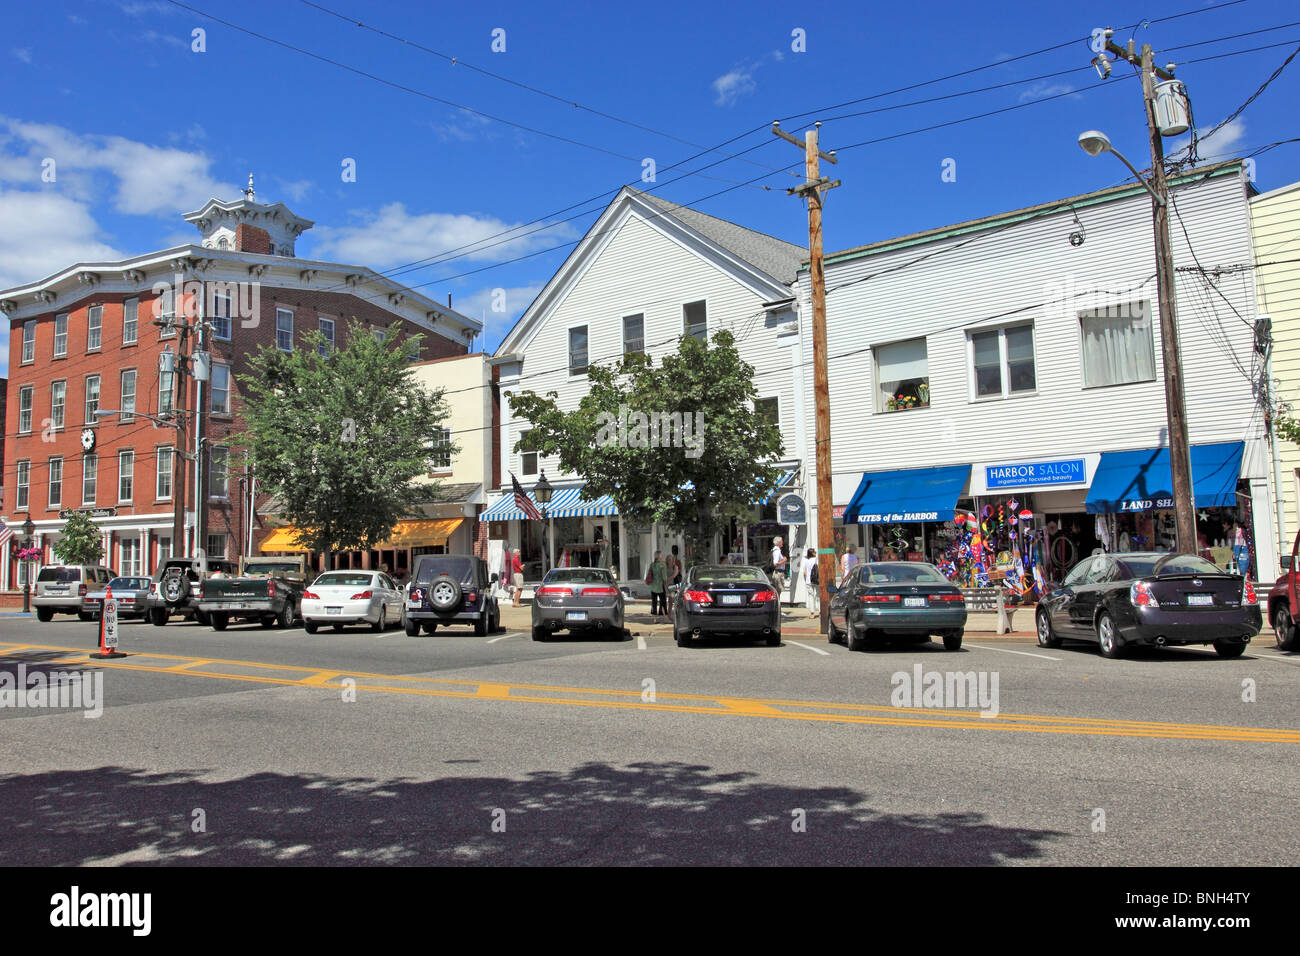 Main St. Sag Harbor Long Island NY Stock Photo Alamy